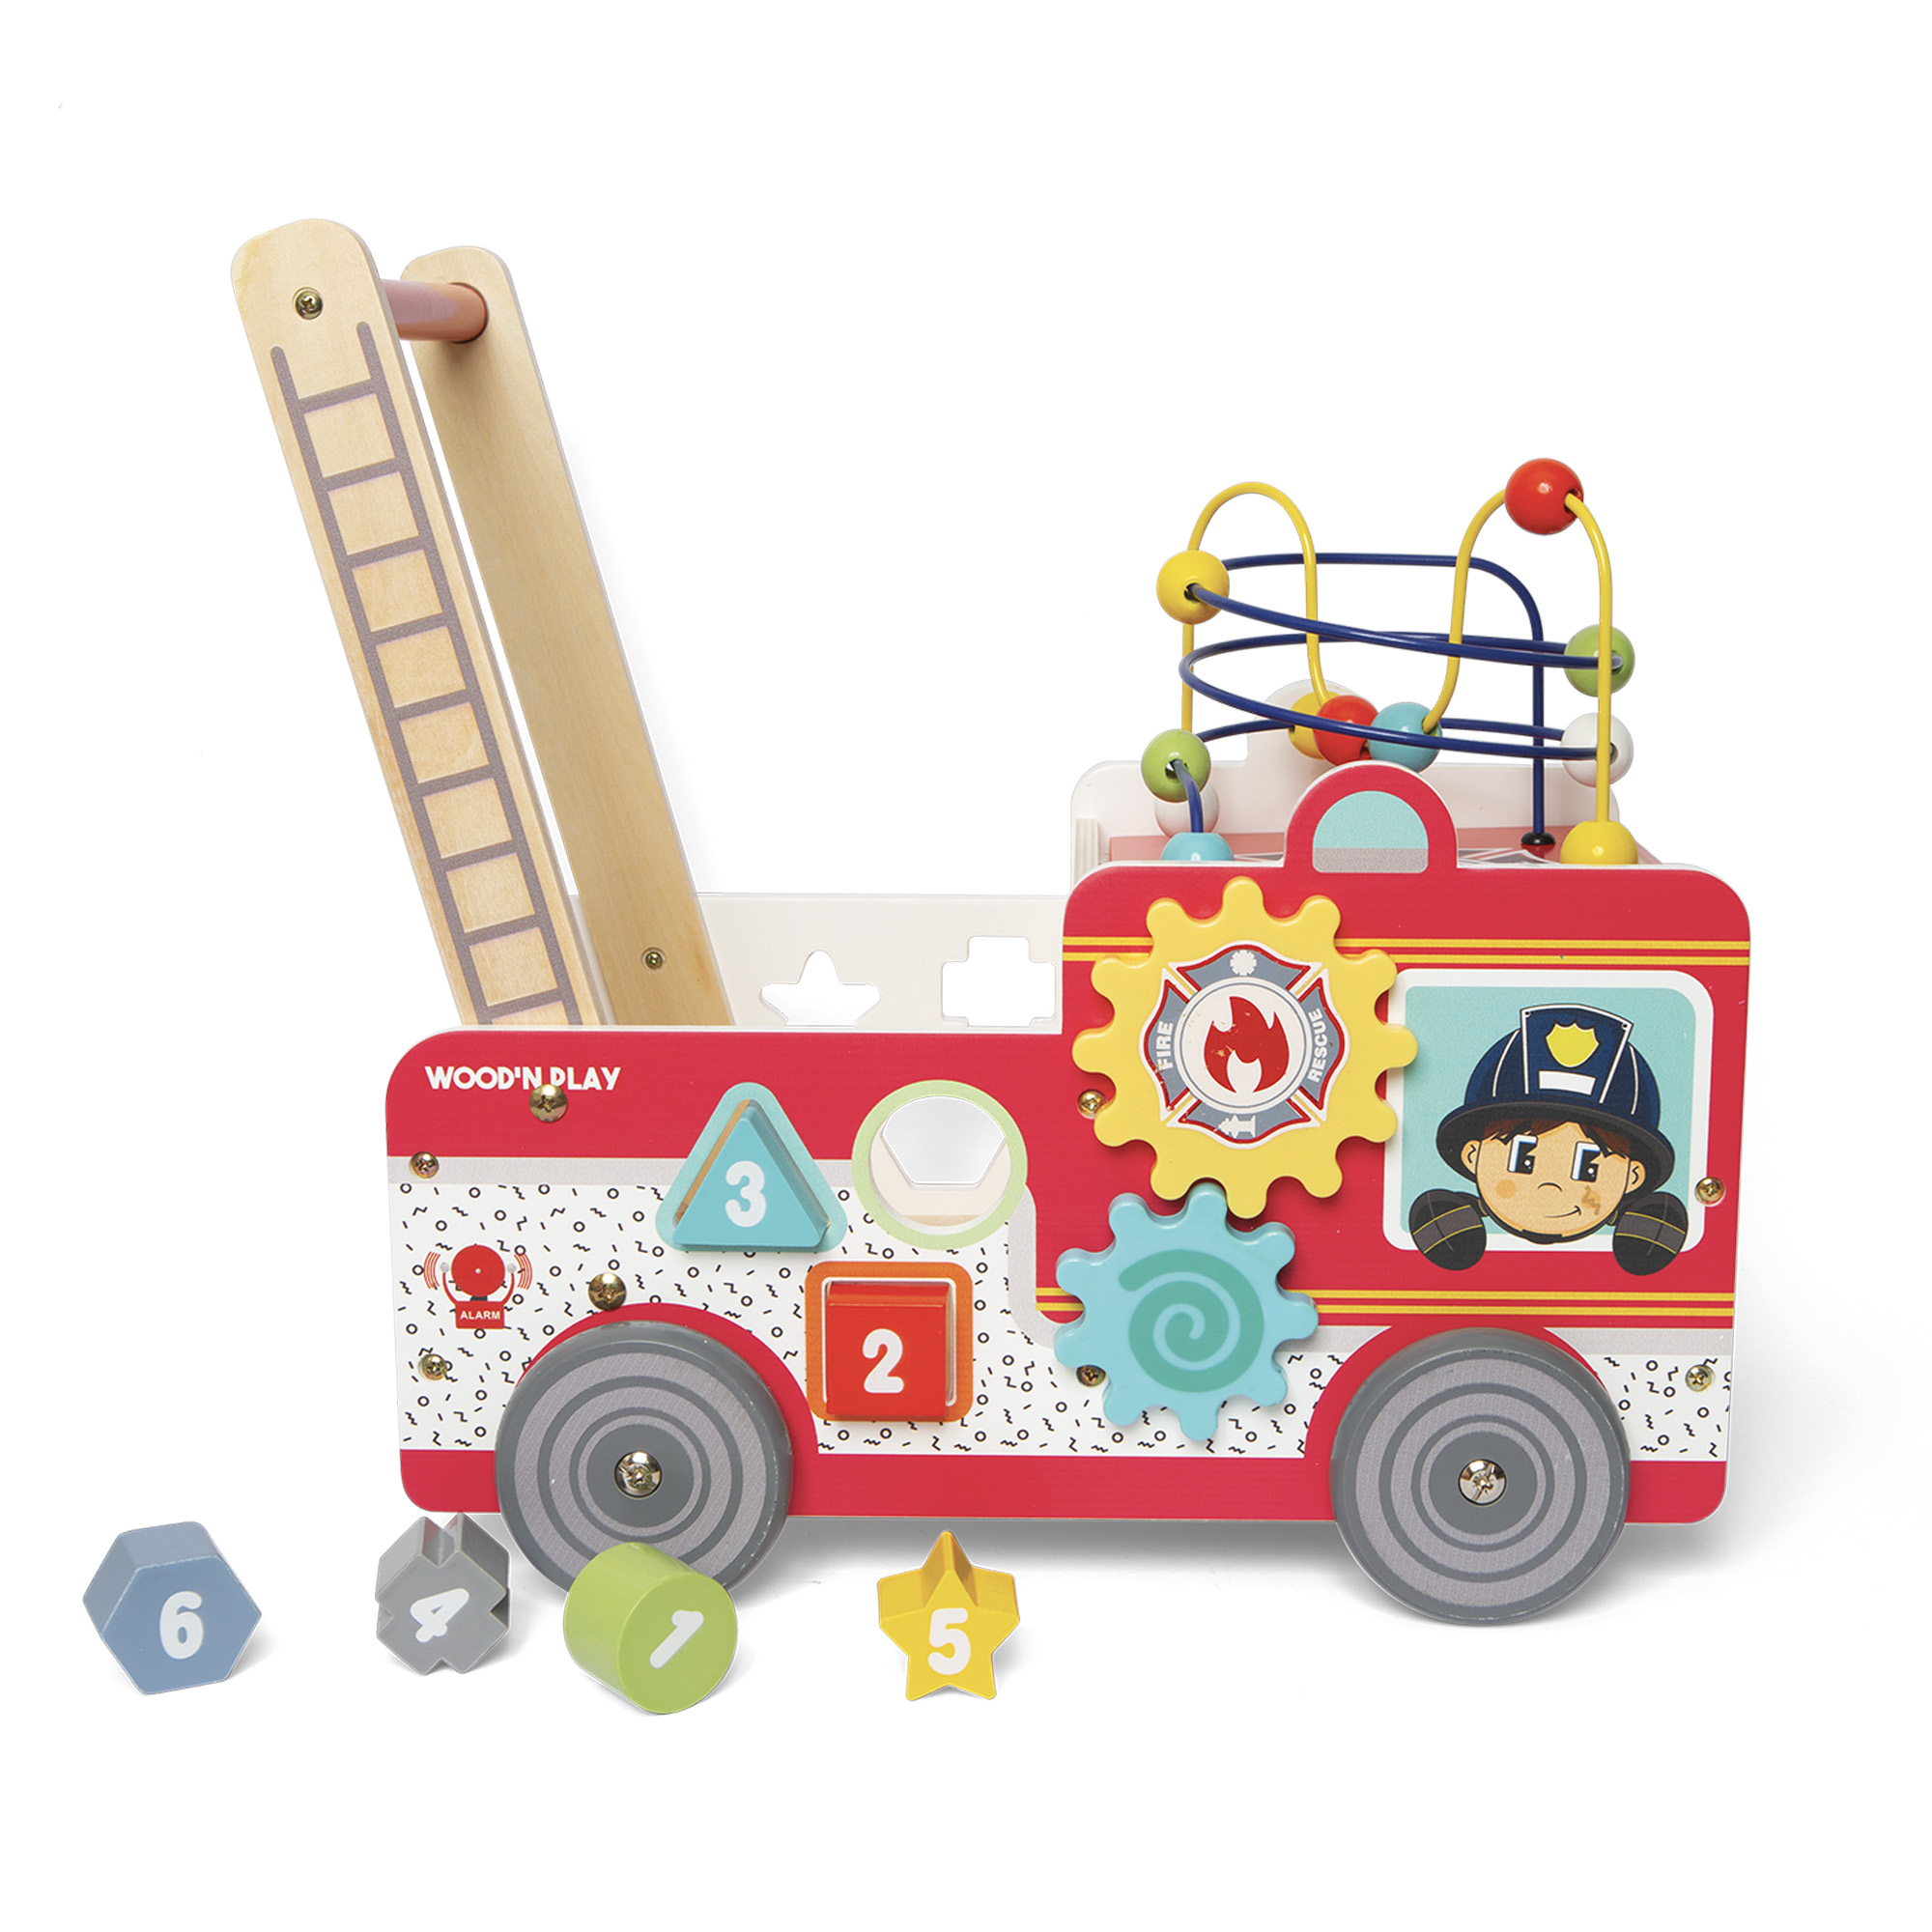 Primi passi camion dei pompieri Wood n' Play - Wood n' Play